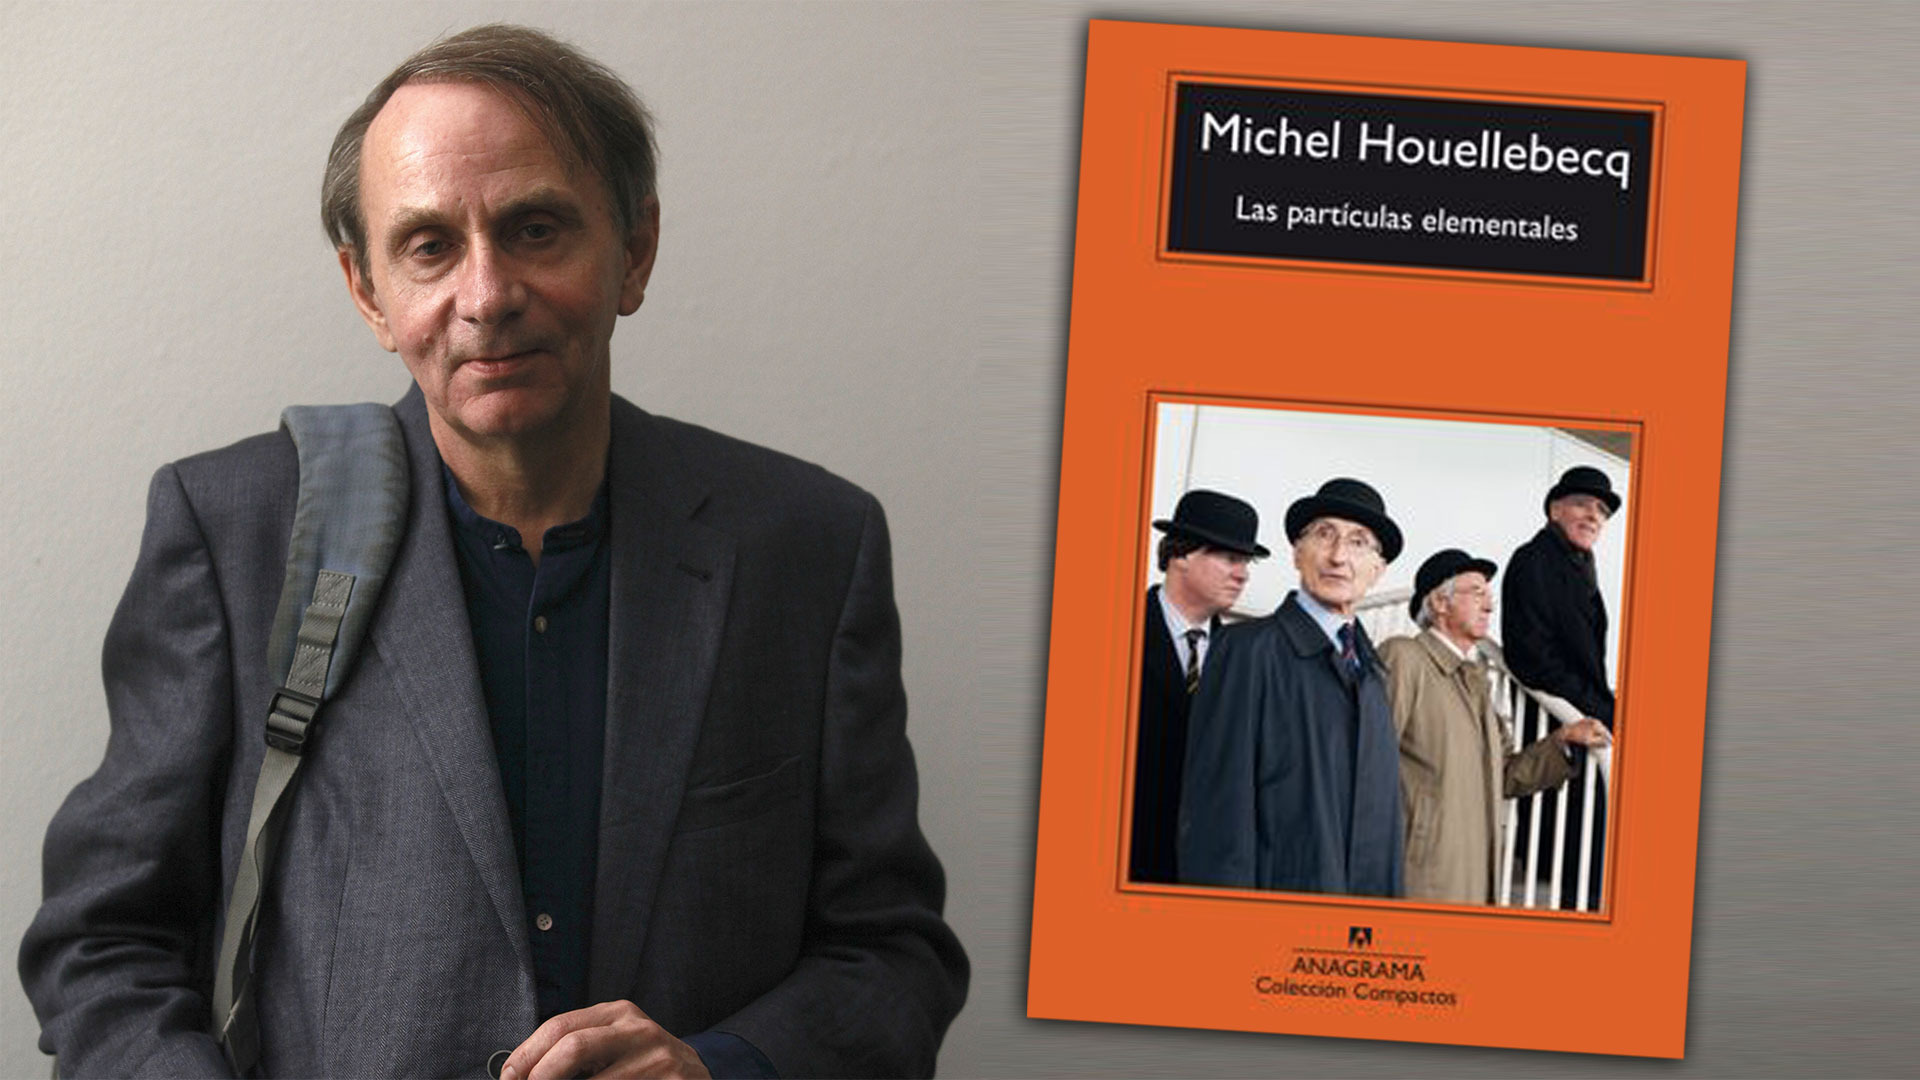 Michel Houellebecq y su libro "Las partículas elementales". (Foto Gettyimages)